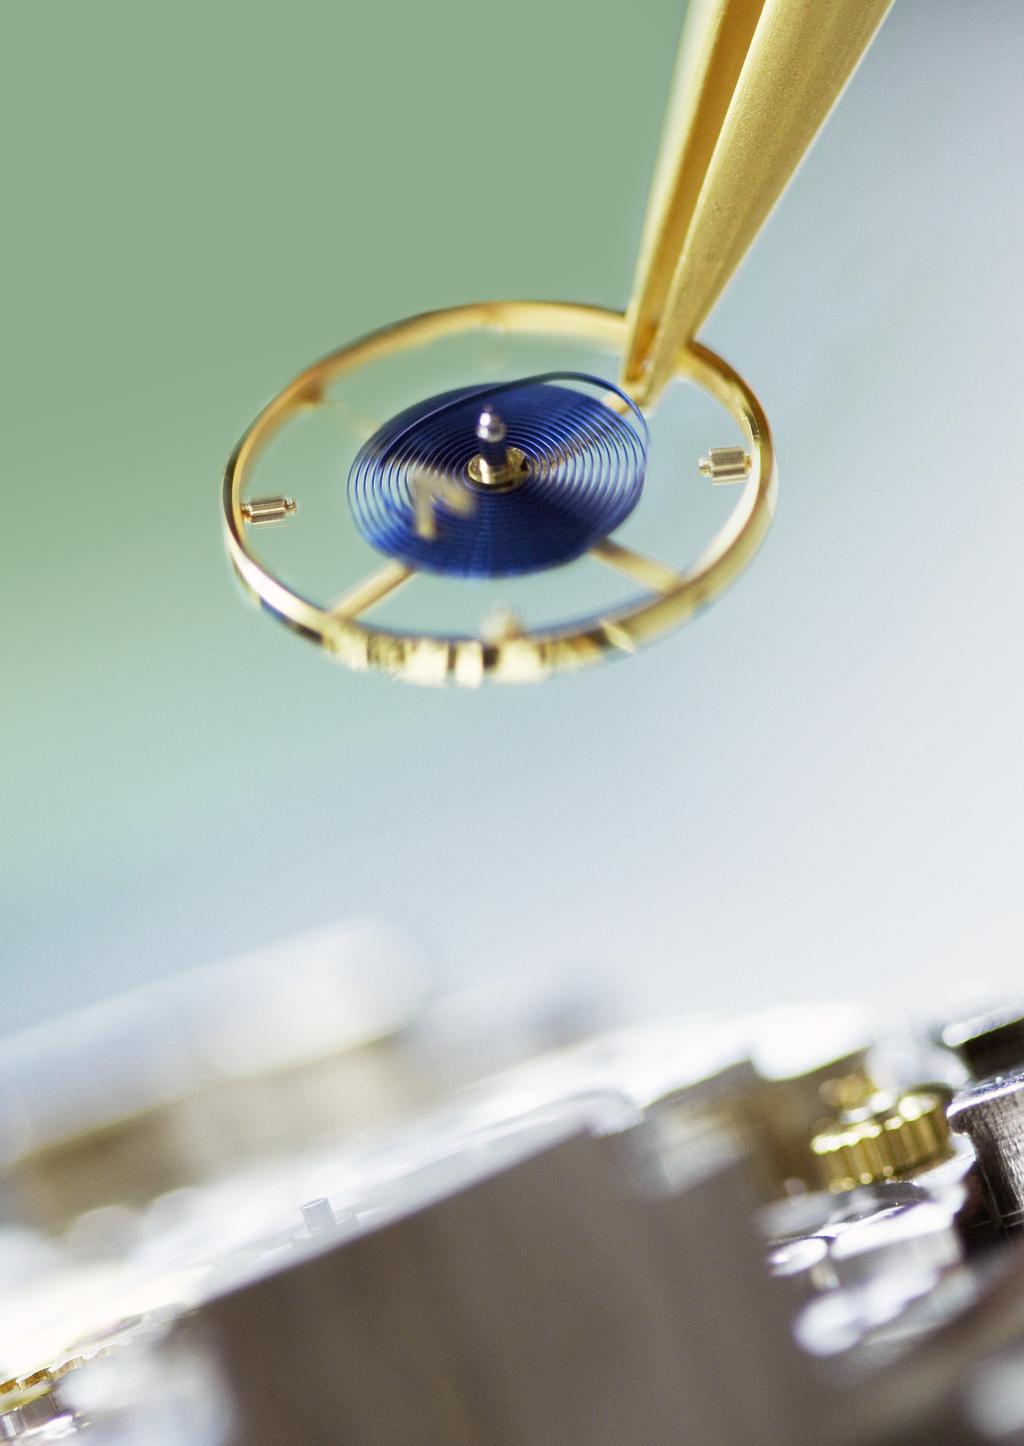 In langjähriger Forschungsarbeit entwickelte Rolex die blaue Parachrom-Breguetspirale.